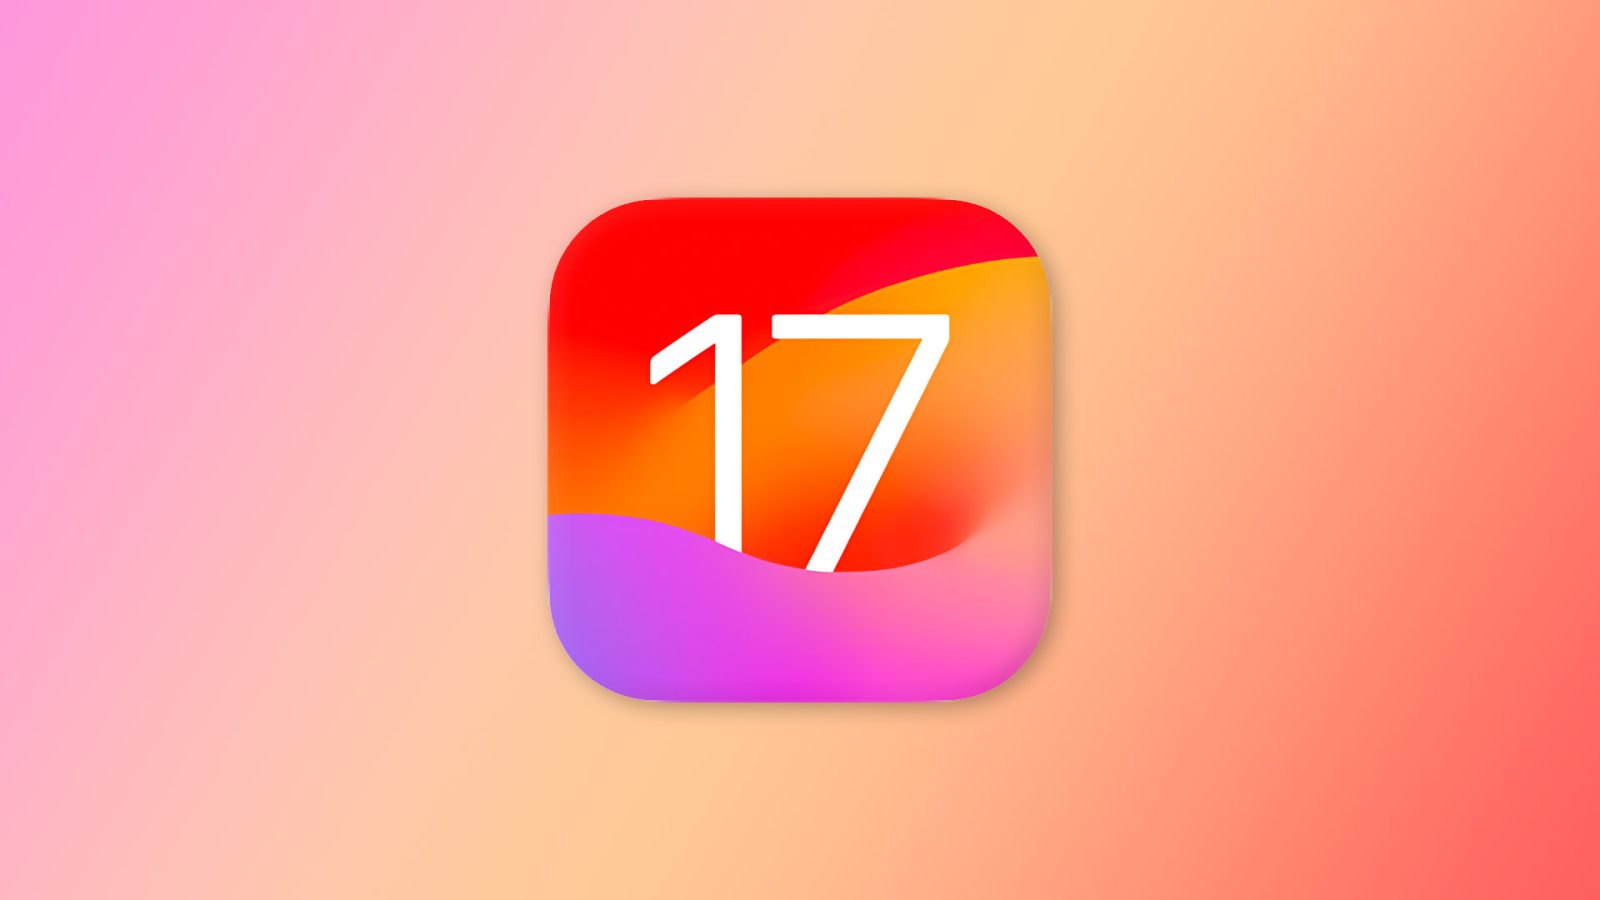 iOS-17.jpg